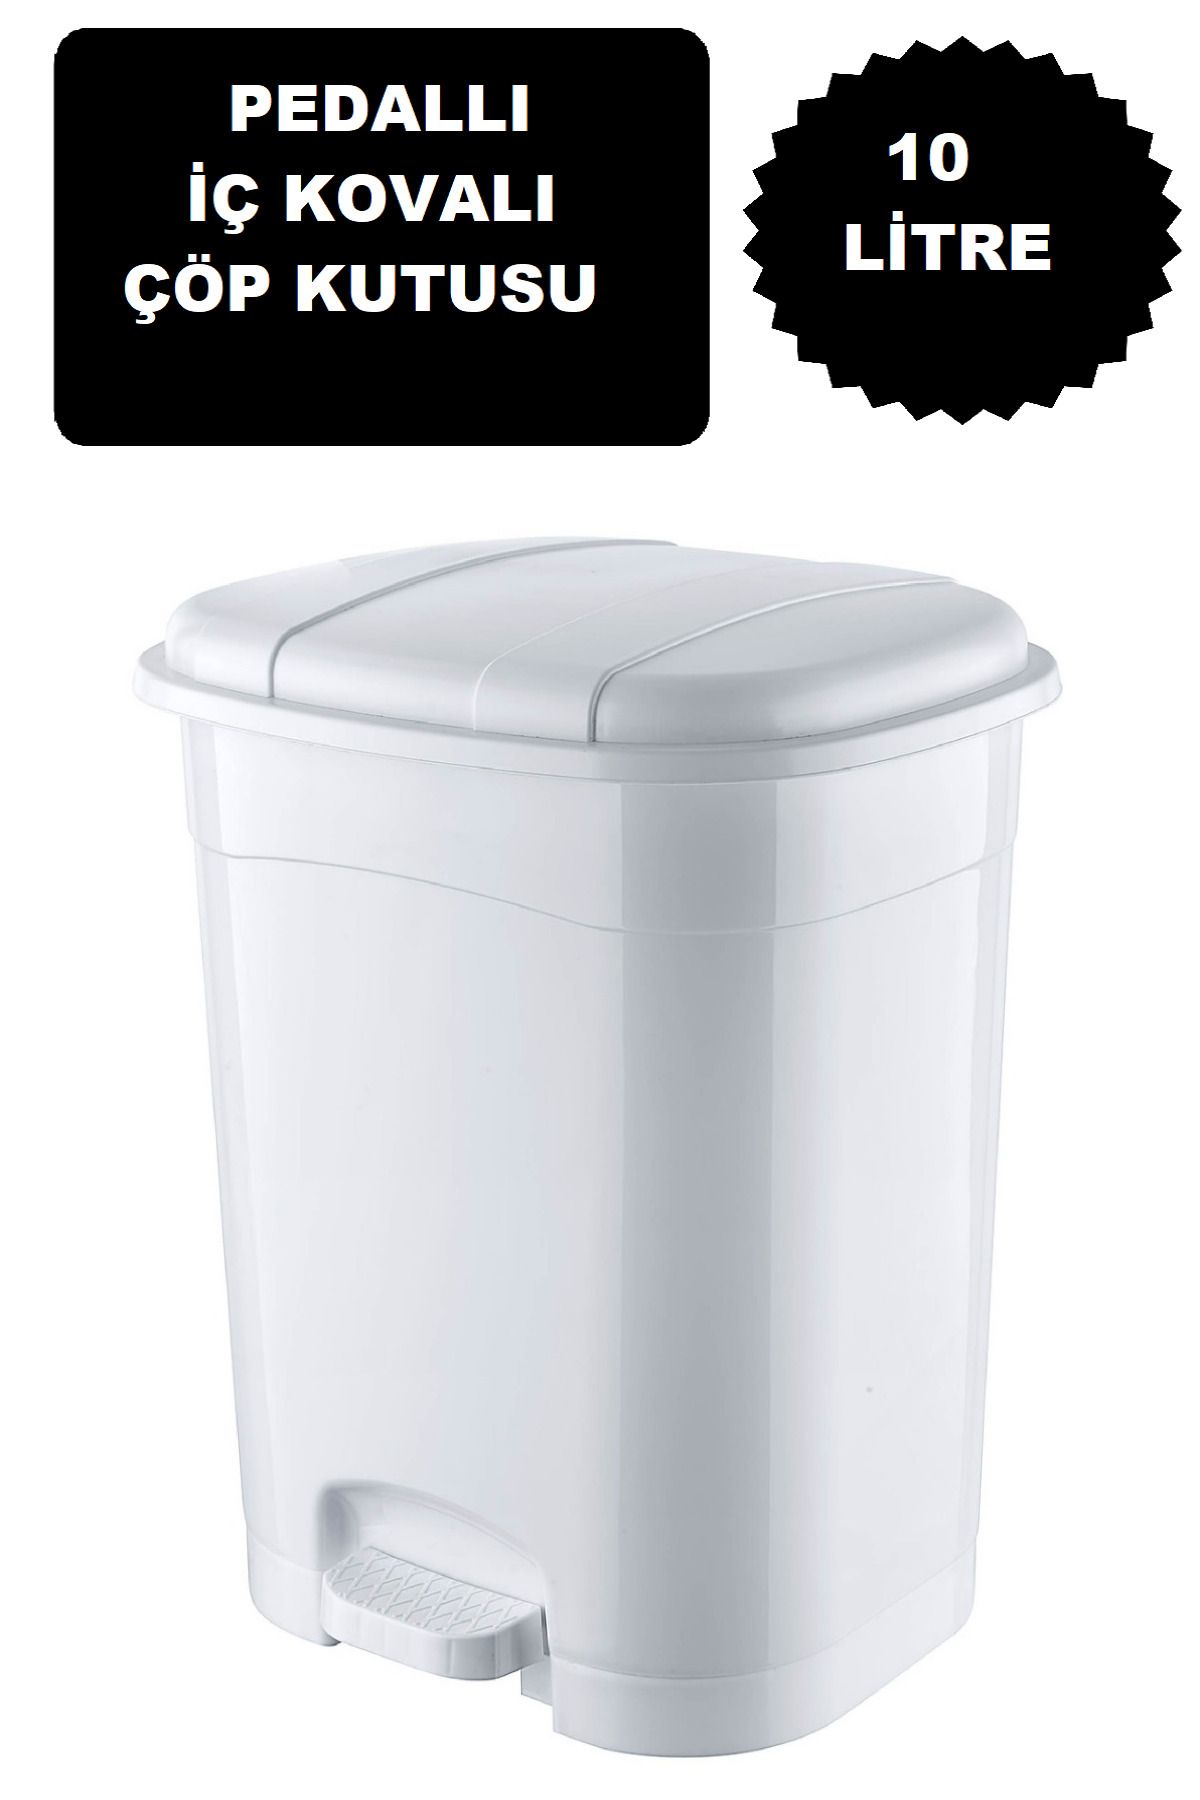 DEEMBRO Beyaz Pedallı Çöp Kovası 10 Litre Iç Kovalı Mutfak Tezgah Üstü, Banyo Ve Ofis Için Çöp Büyük Boy